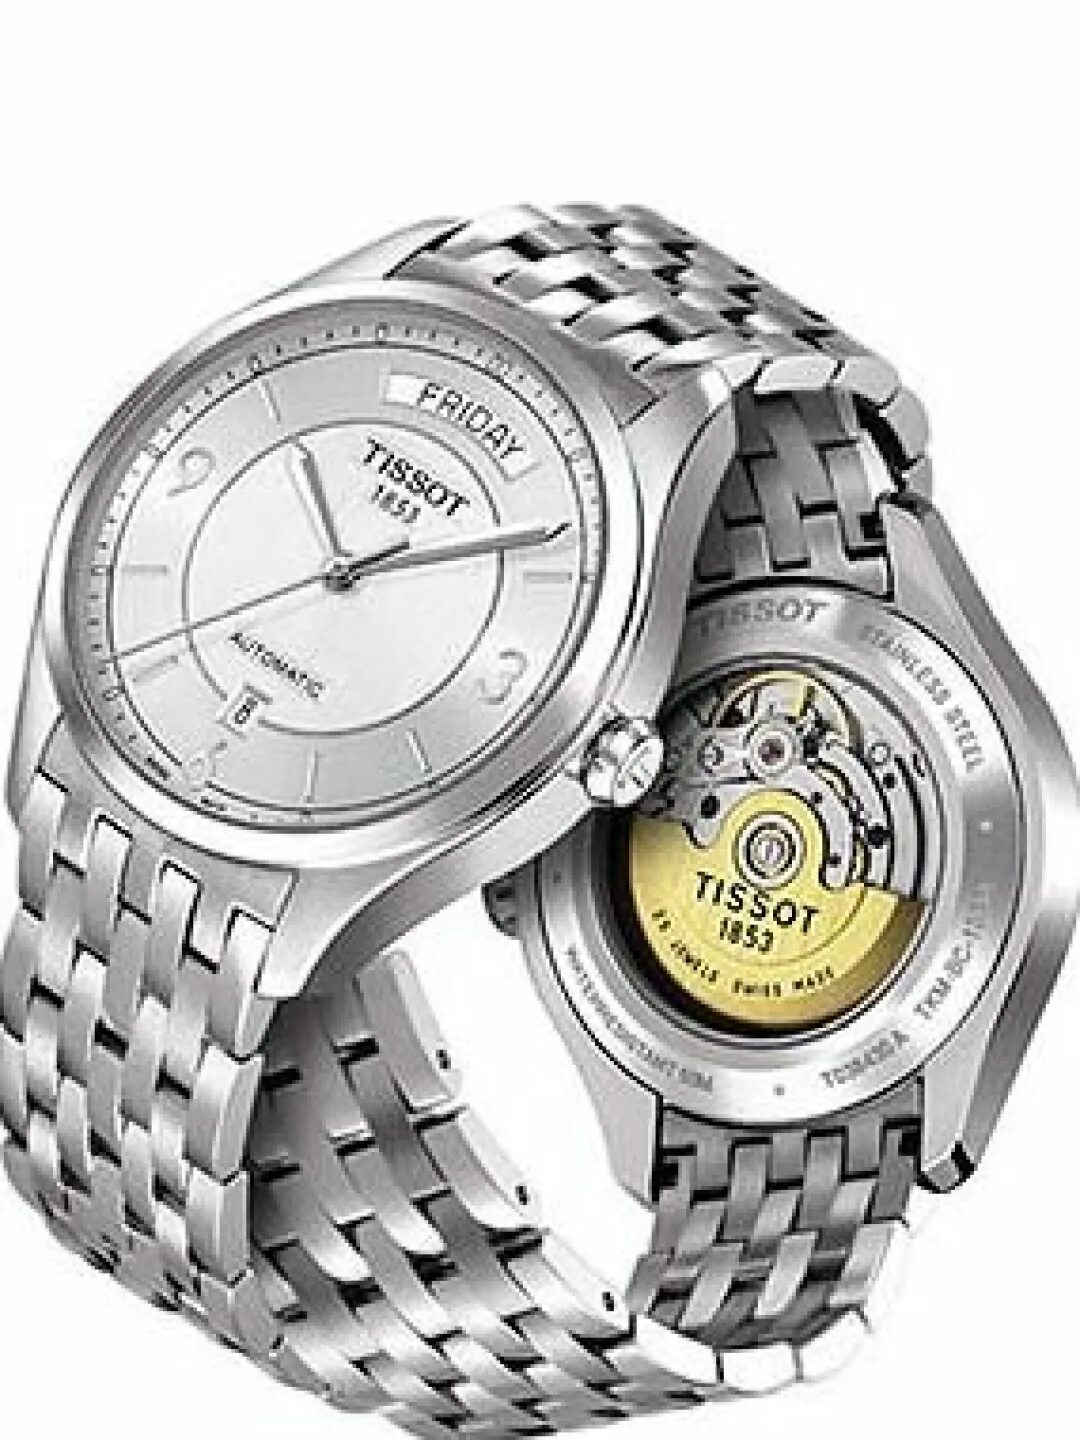 Tissot t038.430. Tissot t038430a. Часы Tissot Stainless Steel. Tissot Swiss watches since 1853. Швейцарские наручные часы тиссот